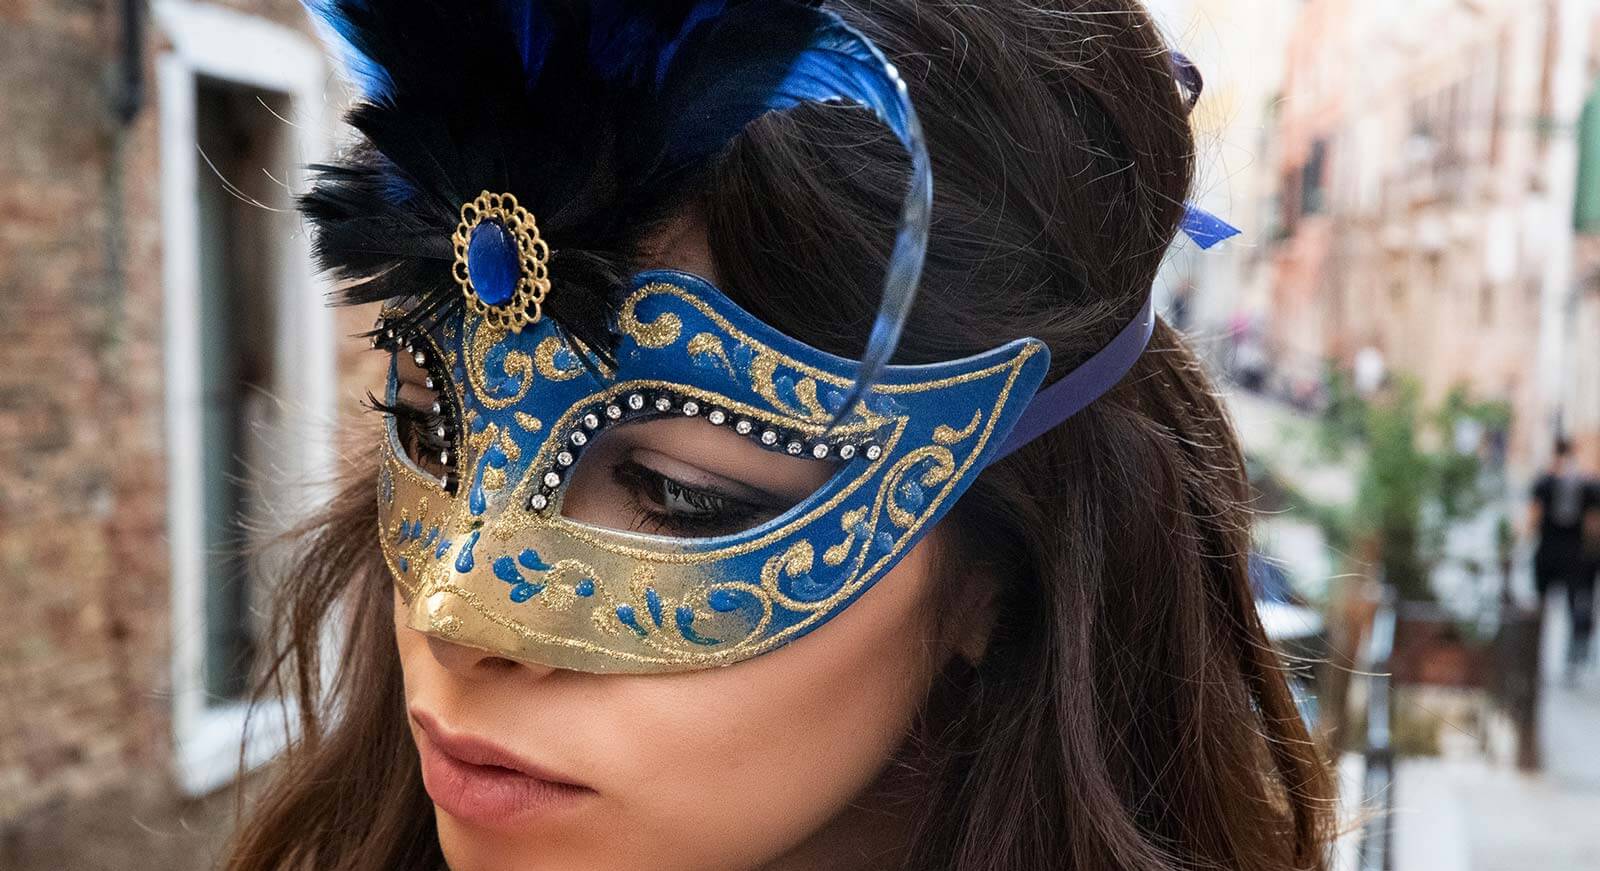 Самая красивая маска. Маска Коломбина венецианская. Маска Венецианского карнавала Коломбина. Венецианский карнавал Colombina маска. Маска венецианская Коломбина Артэ.